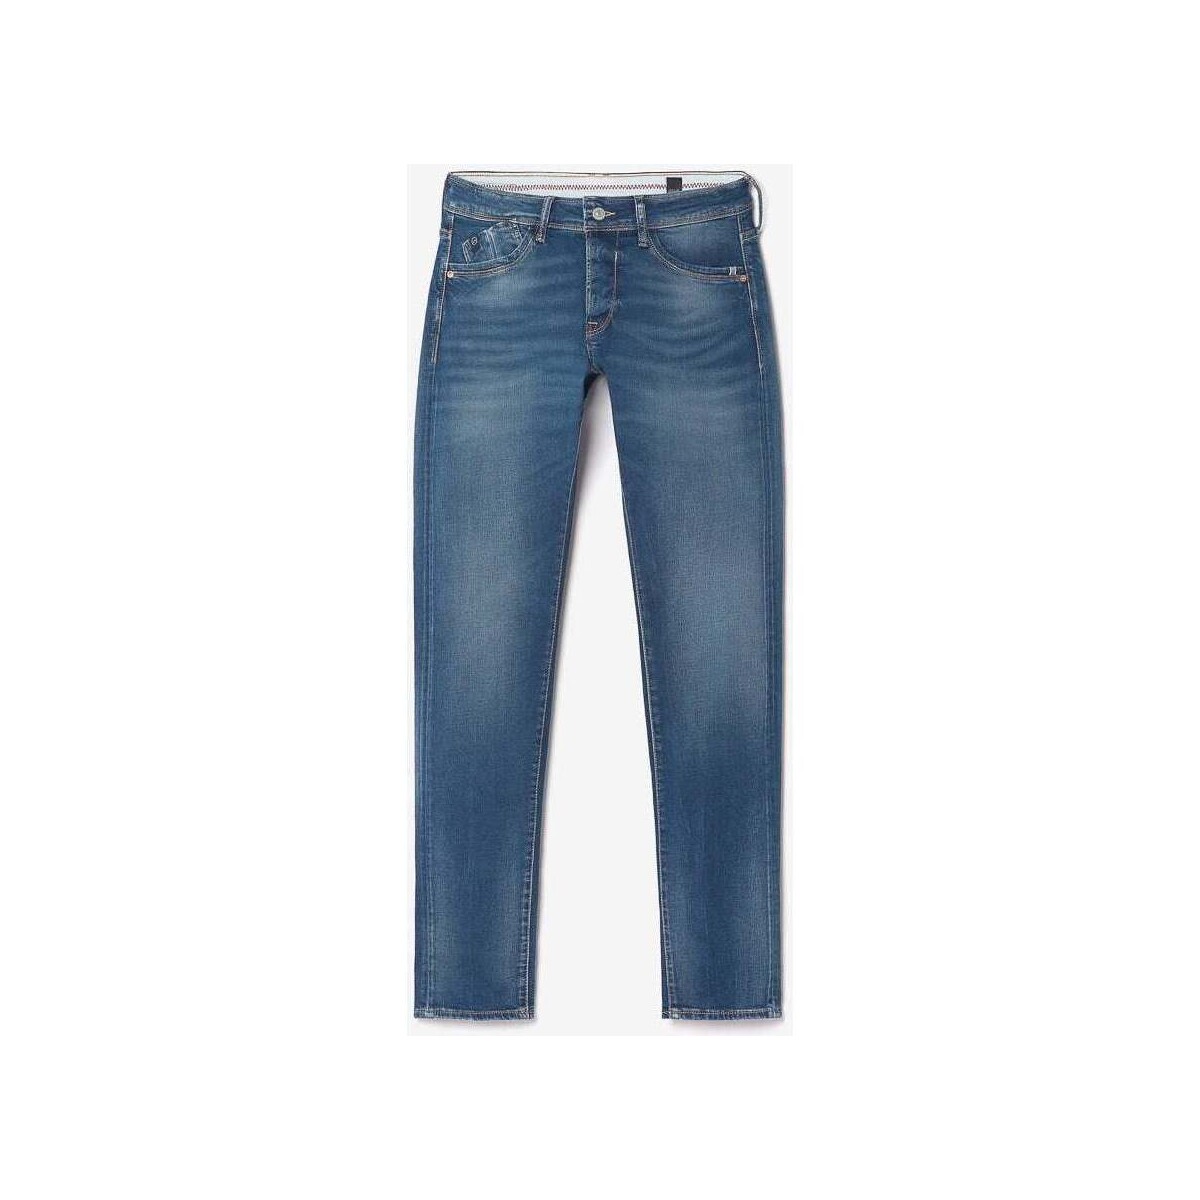 Le Temps des Cerises Bleu Lazare 700/11 adjusted jeans 